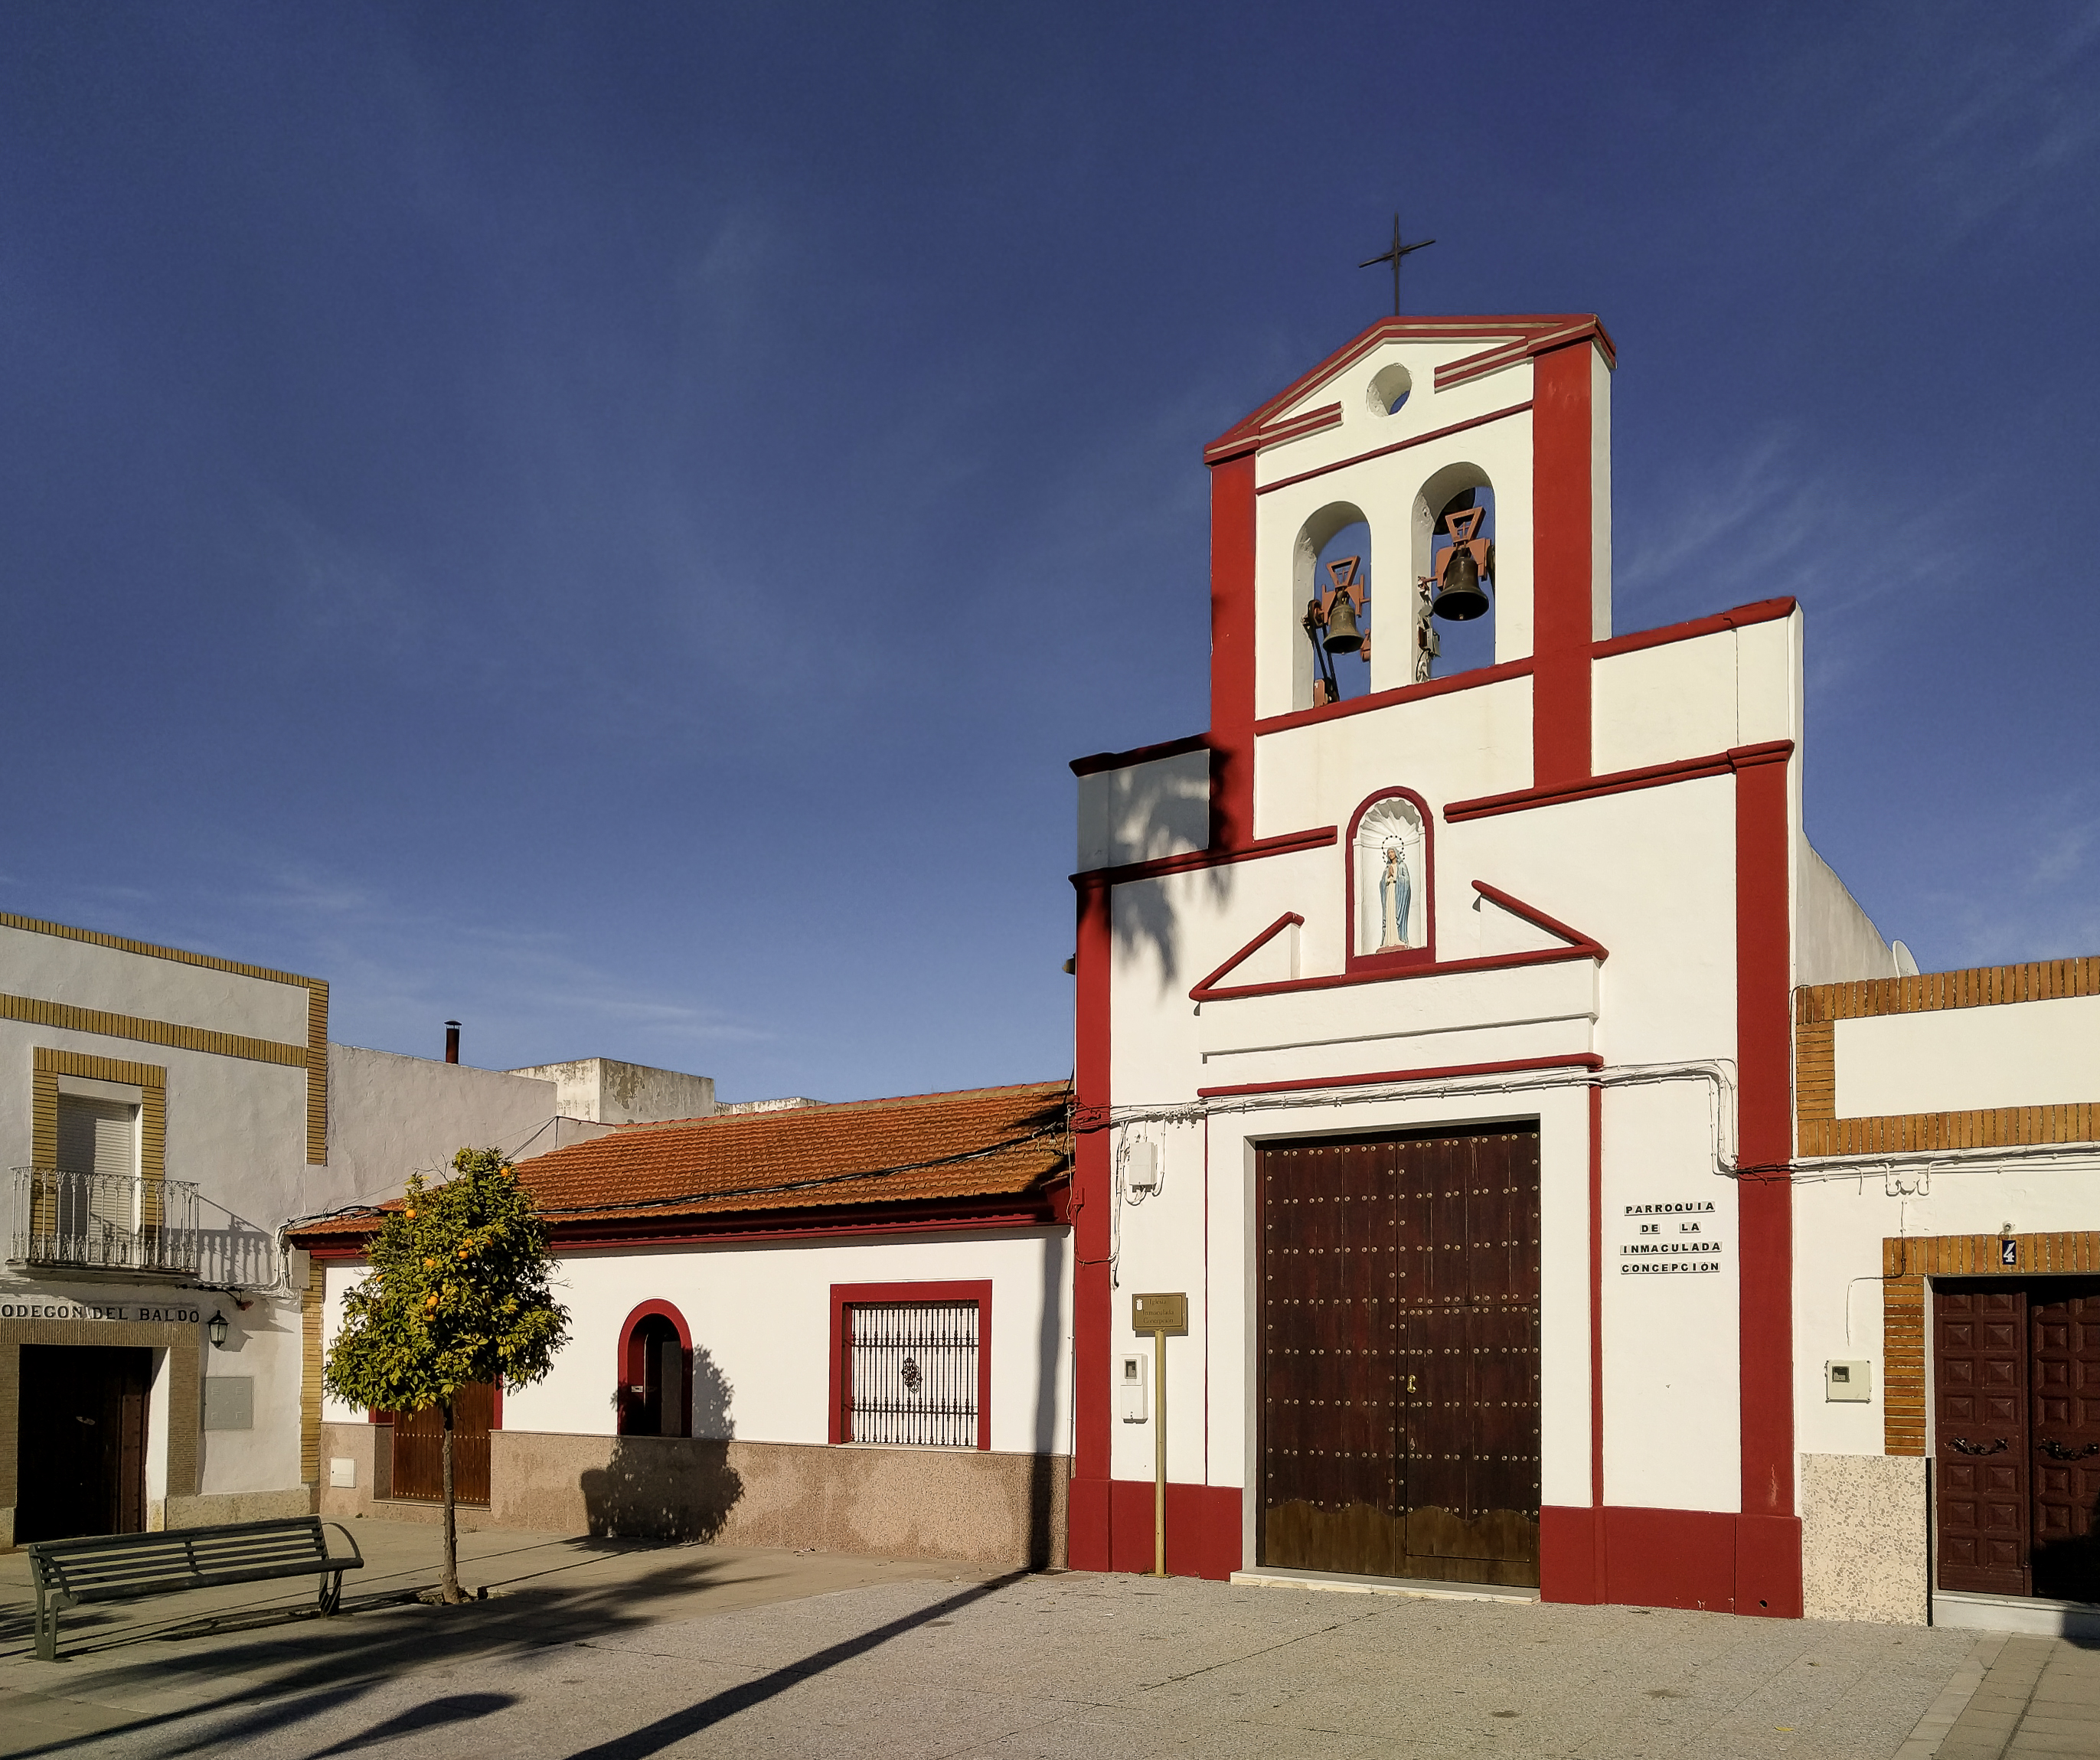 Iglesia Parroquial de la Inmaculada Concepcion. Aldeaquintana, Cordoba. Spain